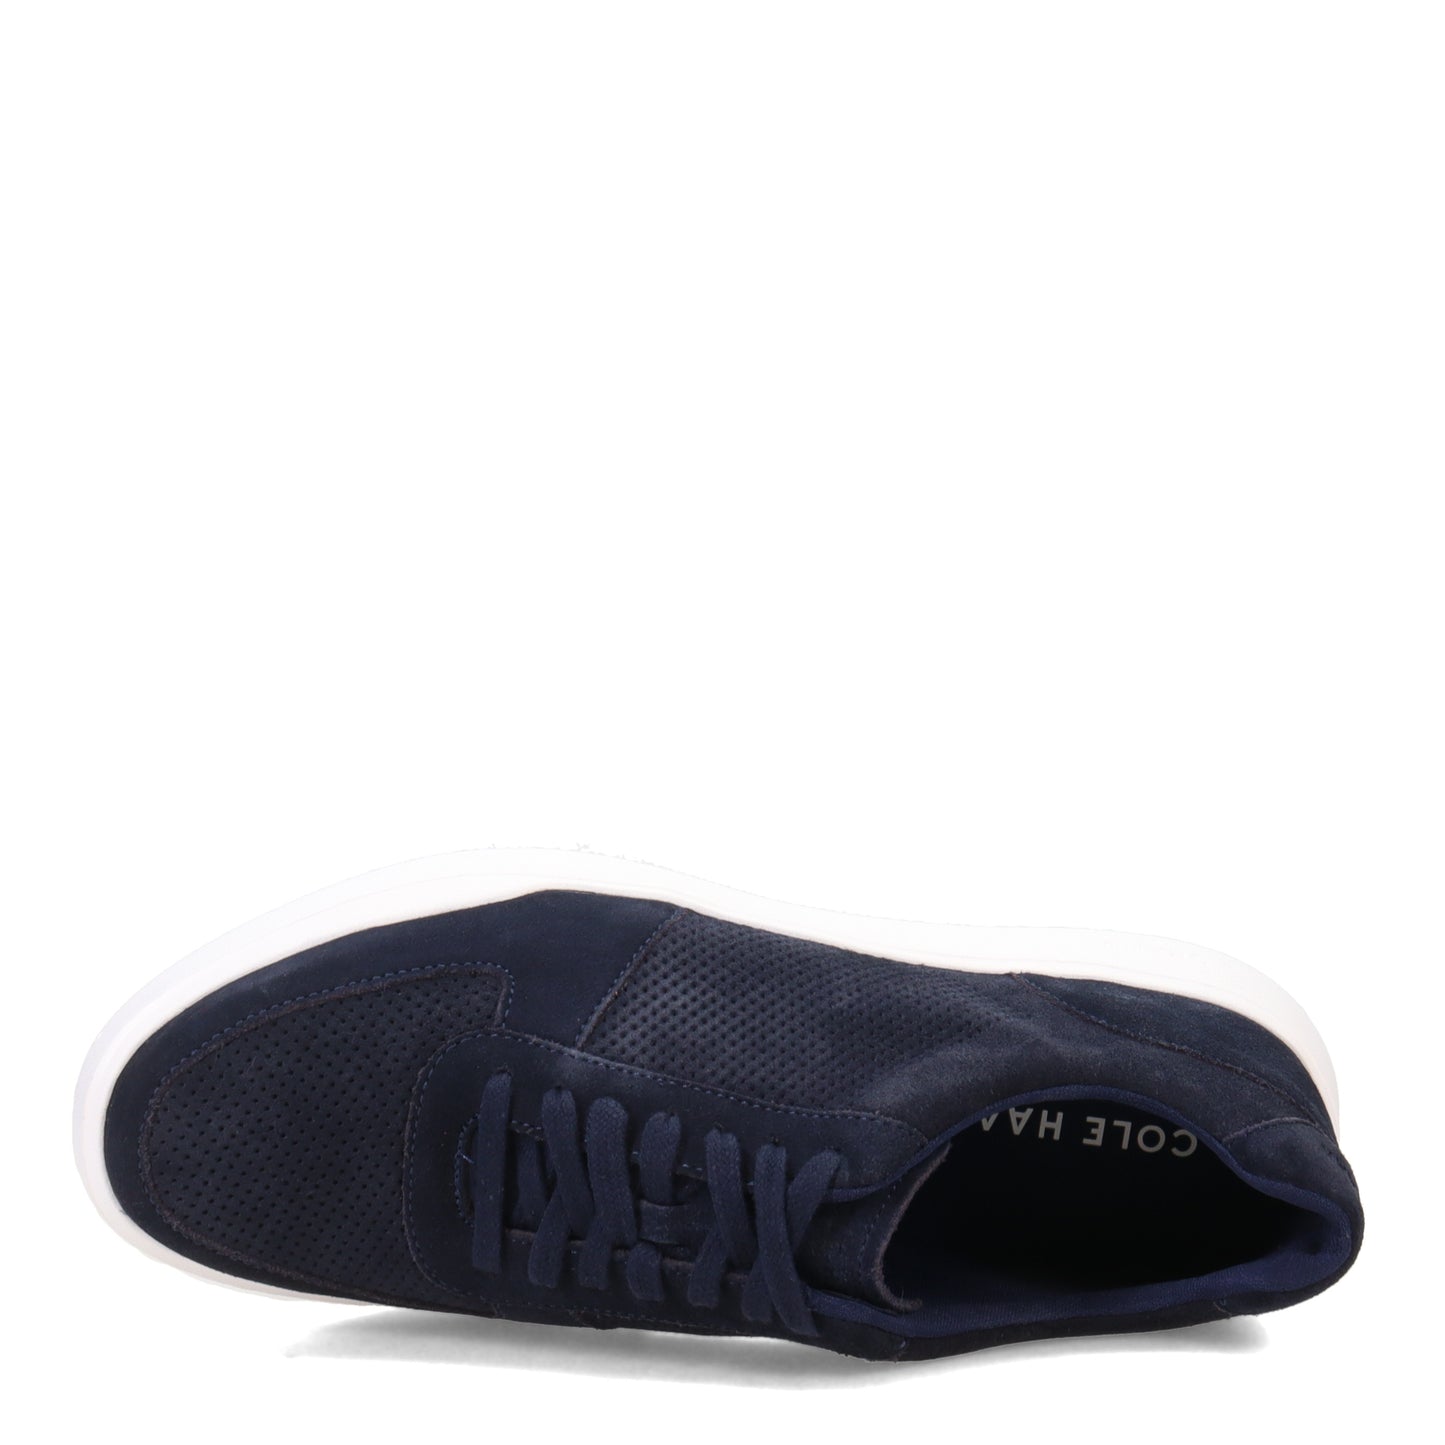 Peltz Shoes  Men's Cole Haan Grand Crosscourt Sneaker Navy C37227